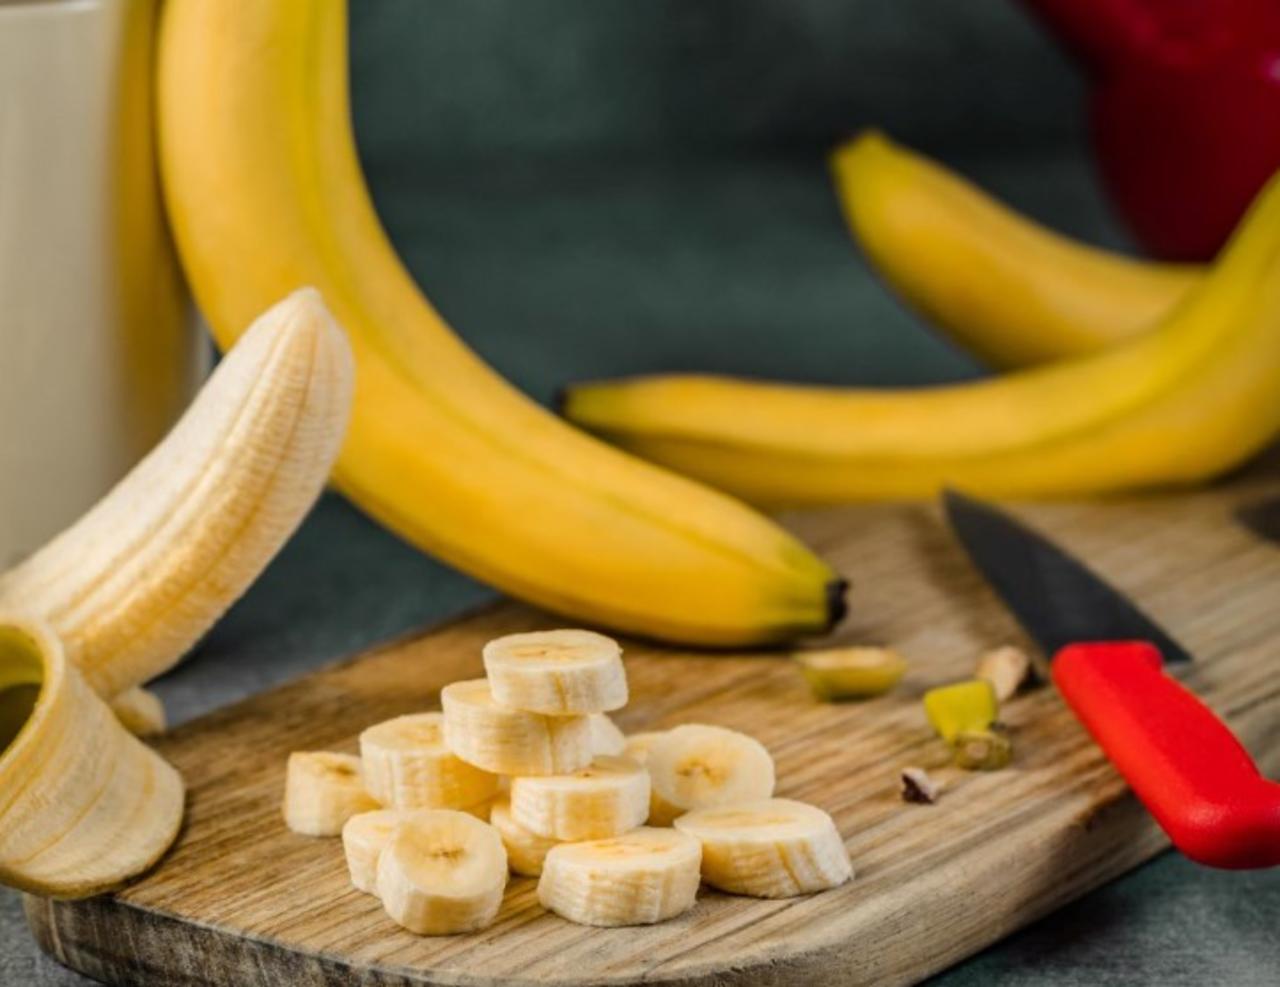 El plátano es una fruta que puede encontrarse durante todo el año, por lo que es consumida en cientos de lugares alrededor del mundo. Se estima que existen cerca de 100 variedades de plátano, de las cuales ocho se cultivan en México, de acuerdo con información recabada por el Servicio de Información Agroalimentaria y Pesquera.